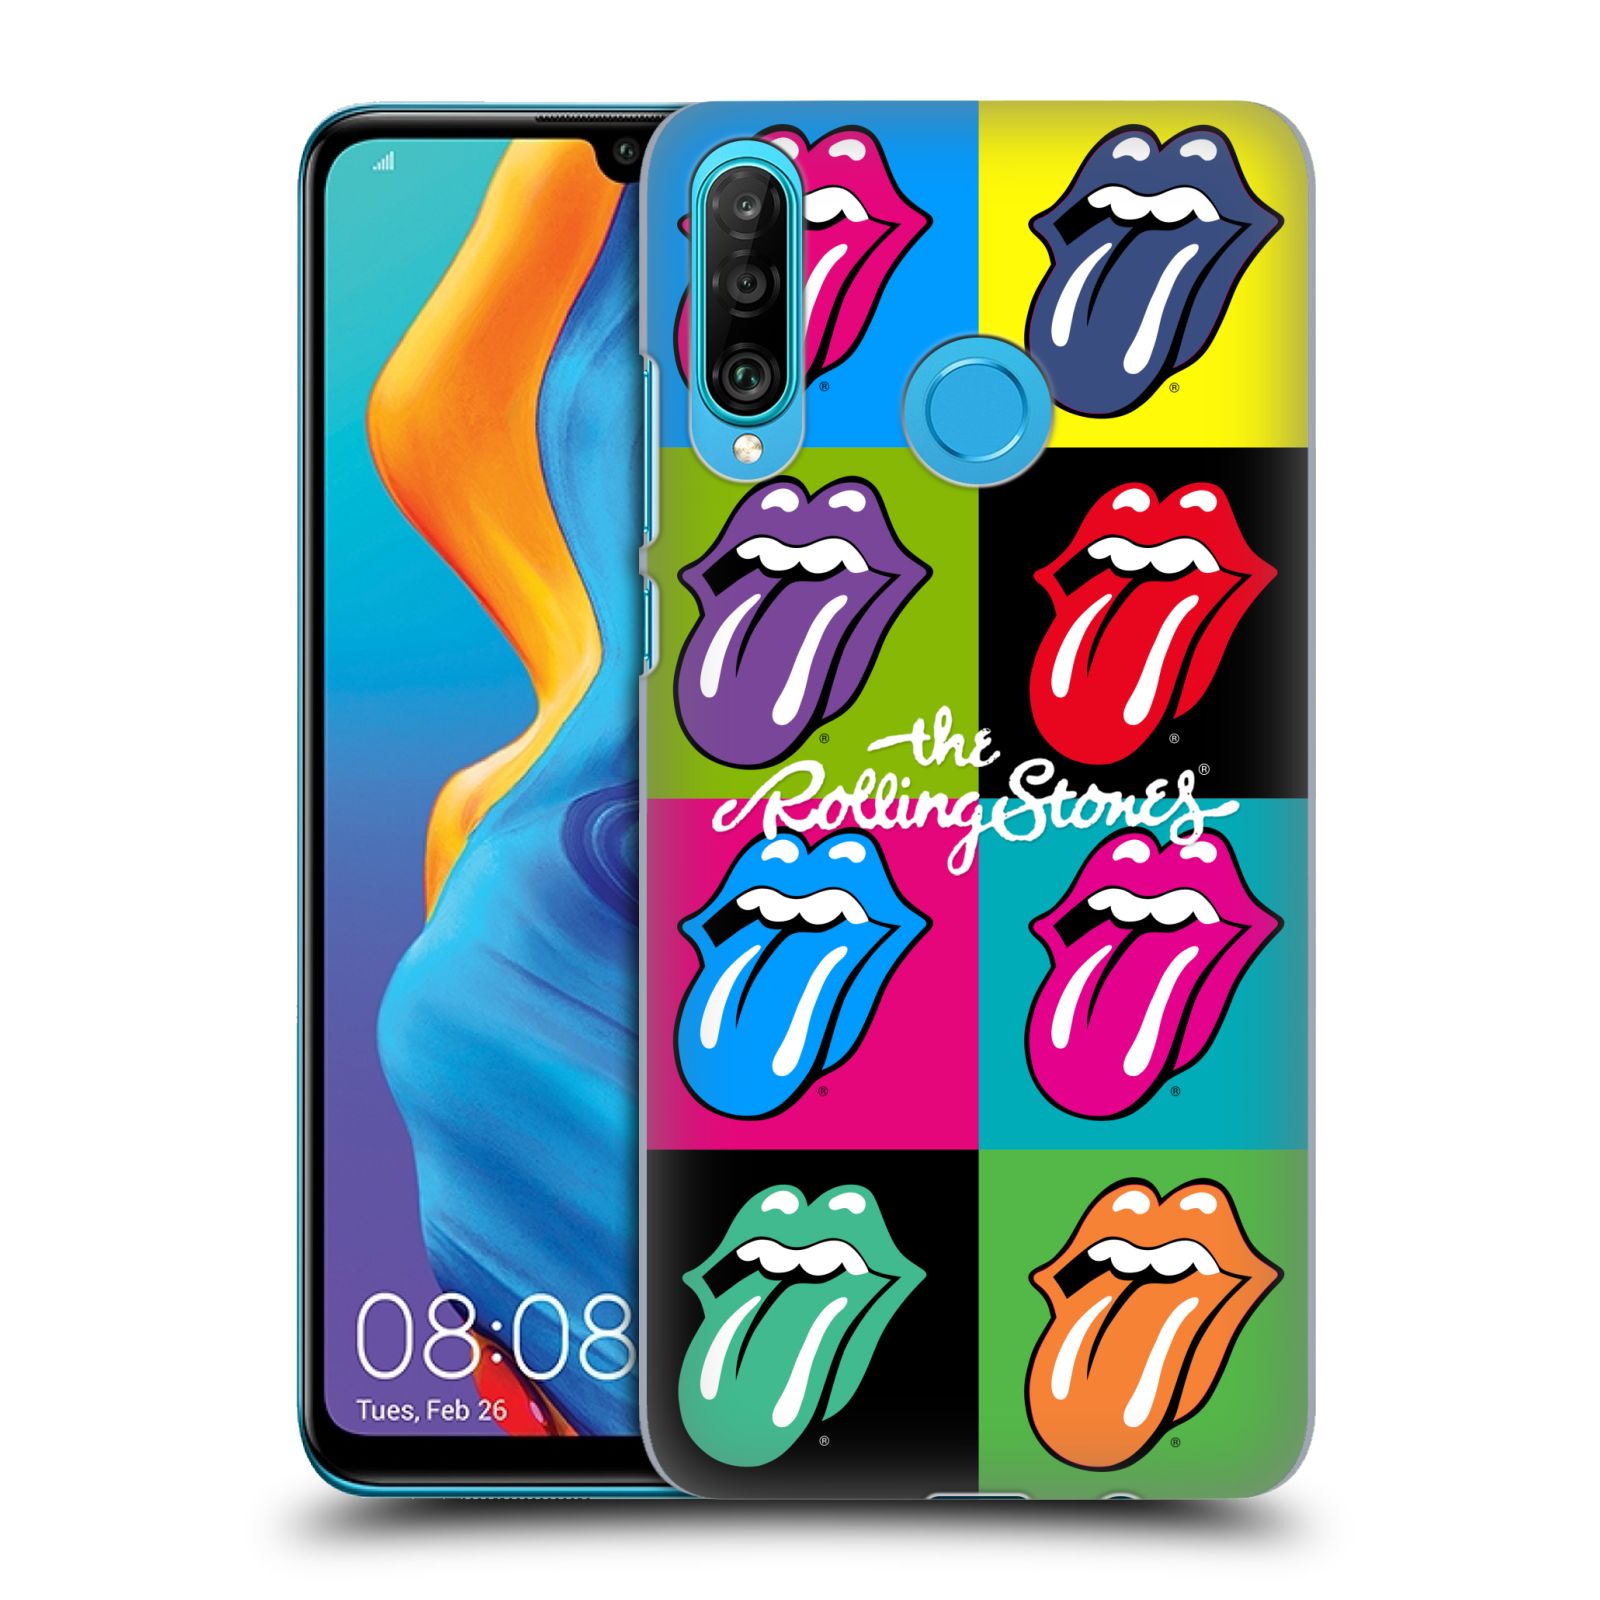 Plastové pouzdro na mobil Huawei P30 Lite - Head Case - The Rolling Stones - Pop Art Vyplazené Jazyky (Plastový kryt, pouzdro, obal na mobilní telefon Huawei P30 Lite Dual Sim (MAR-L01A, MAR-L21A, MAR-LX1A) s motivem The Rolling Stones - Pop Art Vyplazené